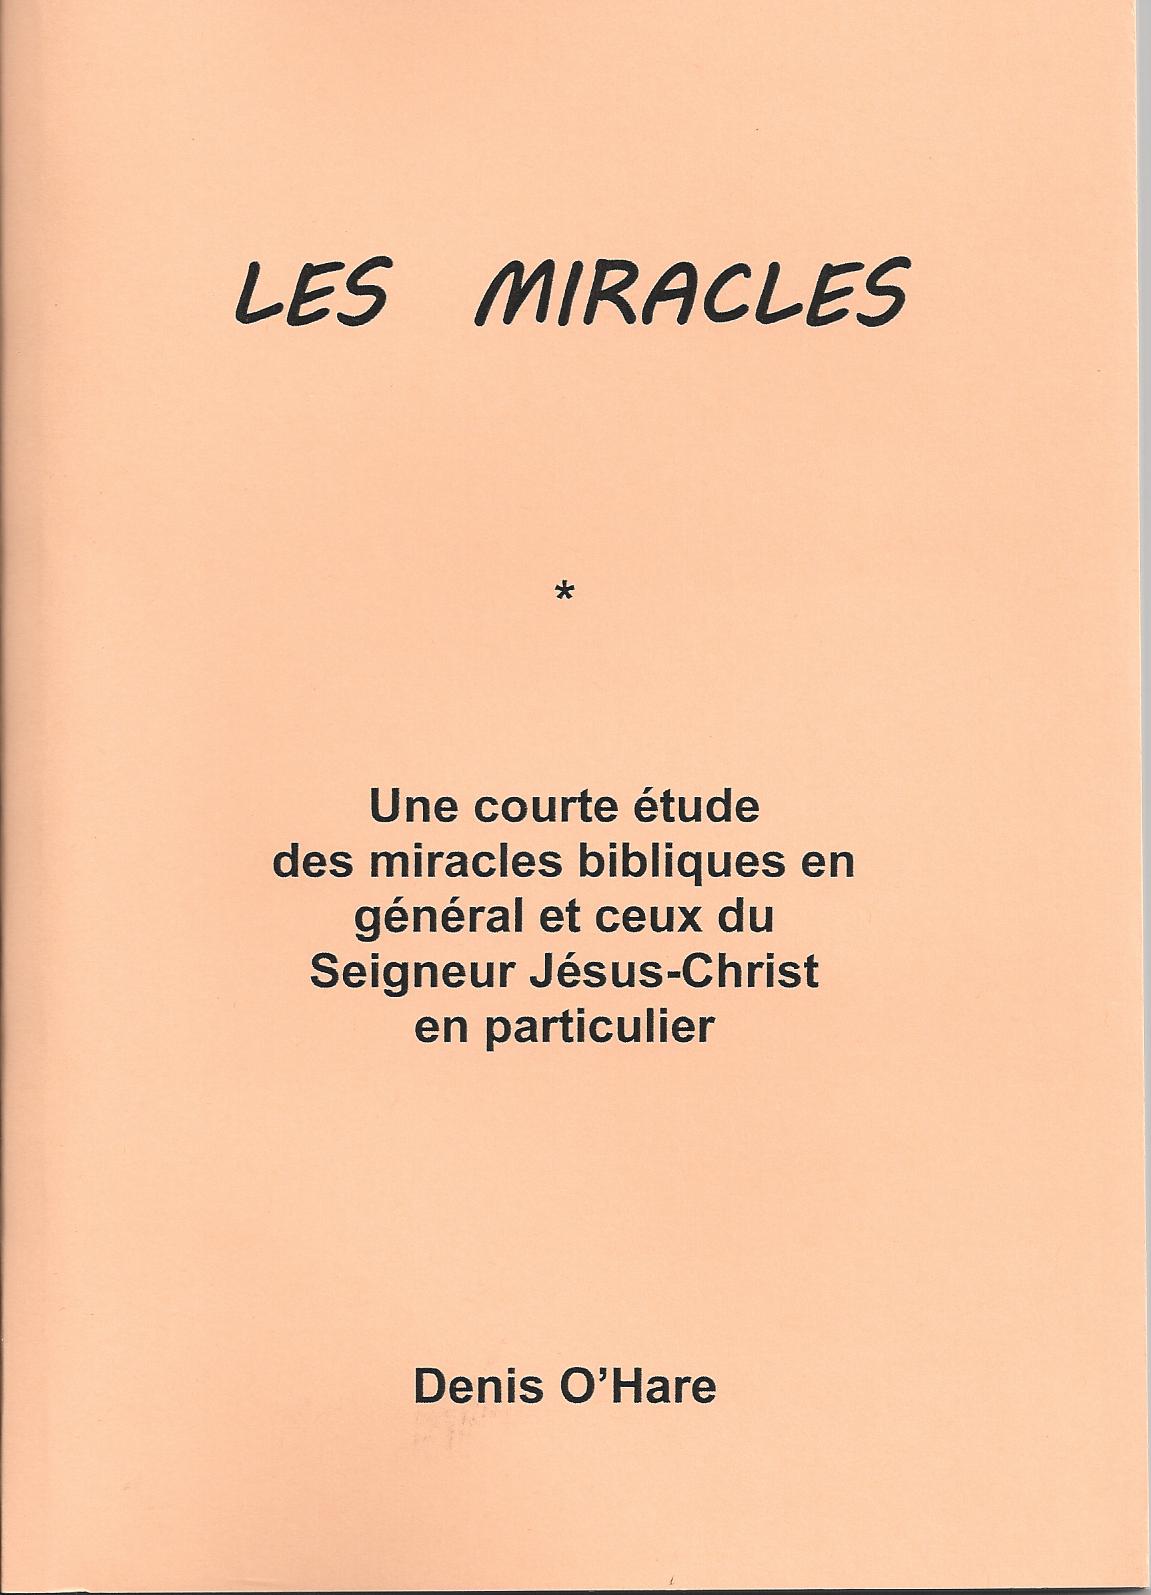 Miracles (Les) - Une courte étude des miracles bibliques en général et ceux du Seigneur Jésus-Christ en particulier